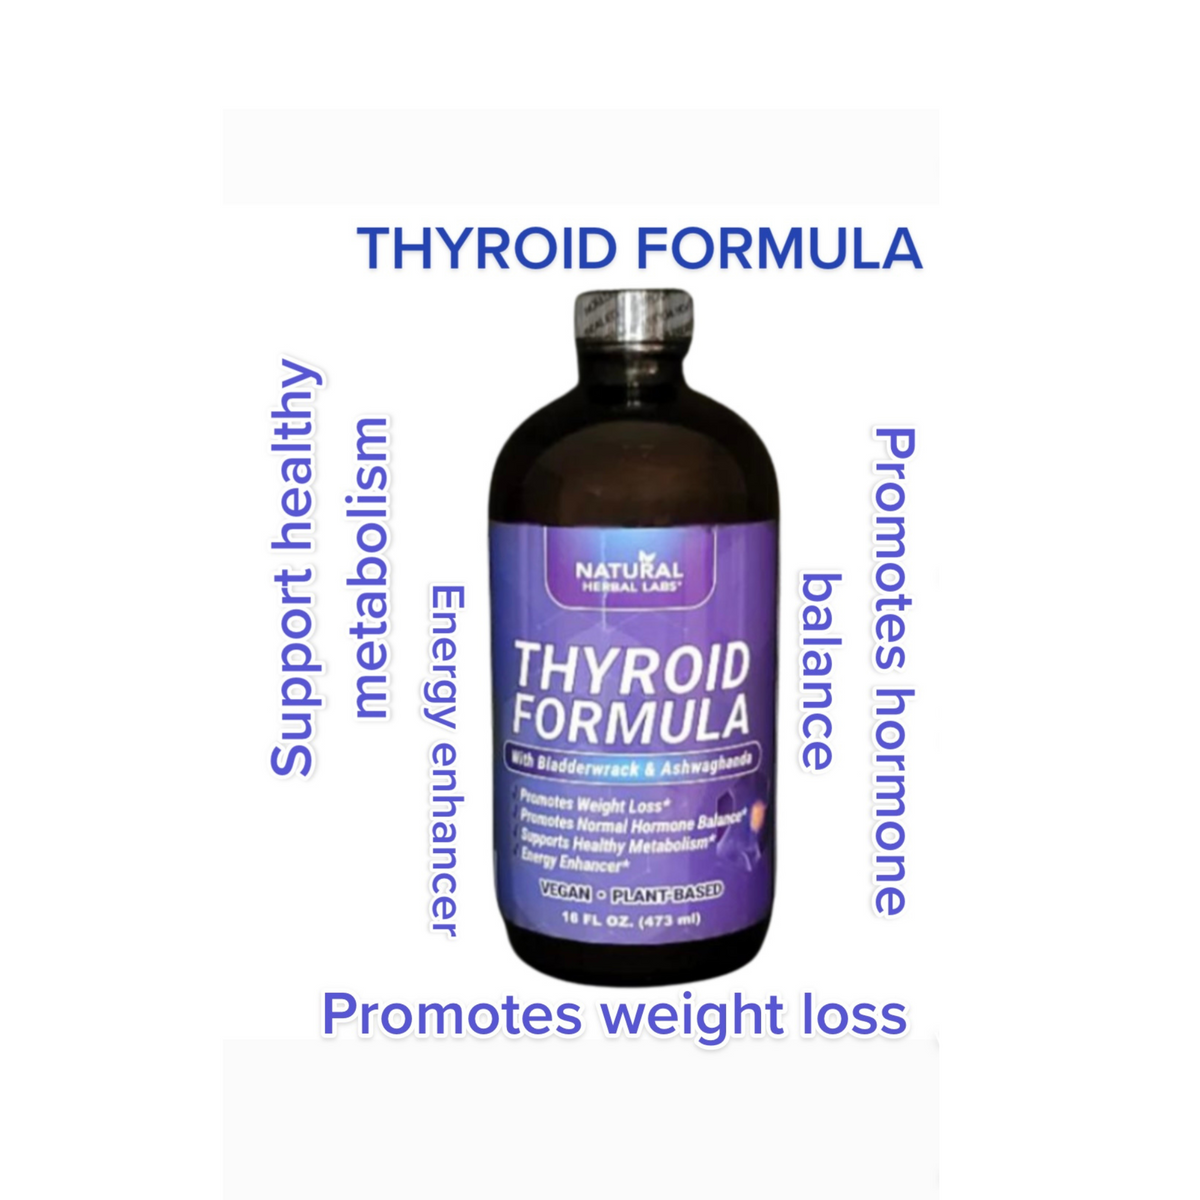 THYROID FORMULA